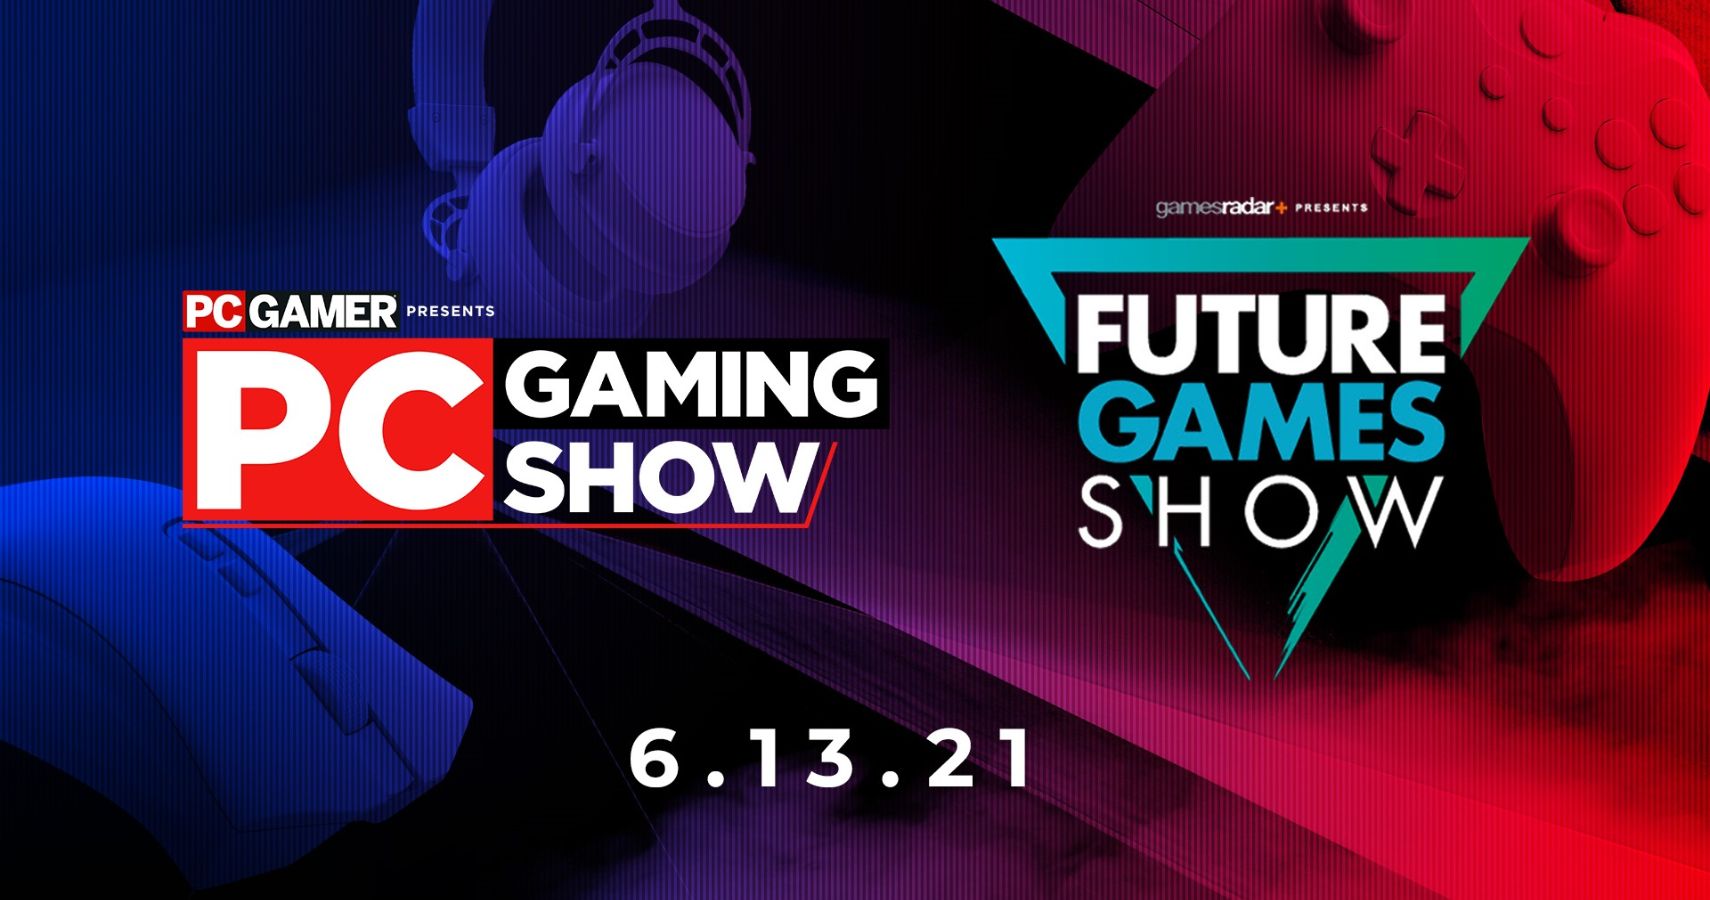 Future Games Show PC Gaming Show 2021 E3